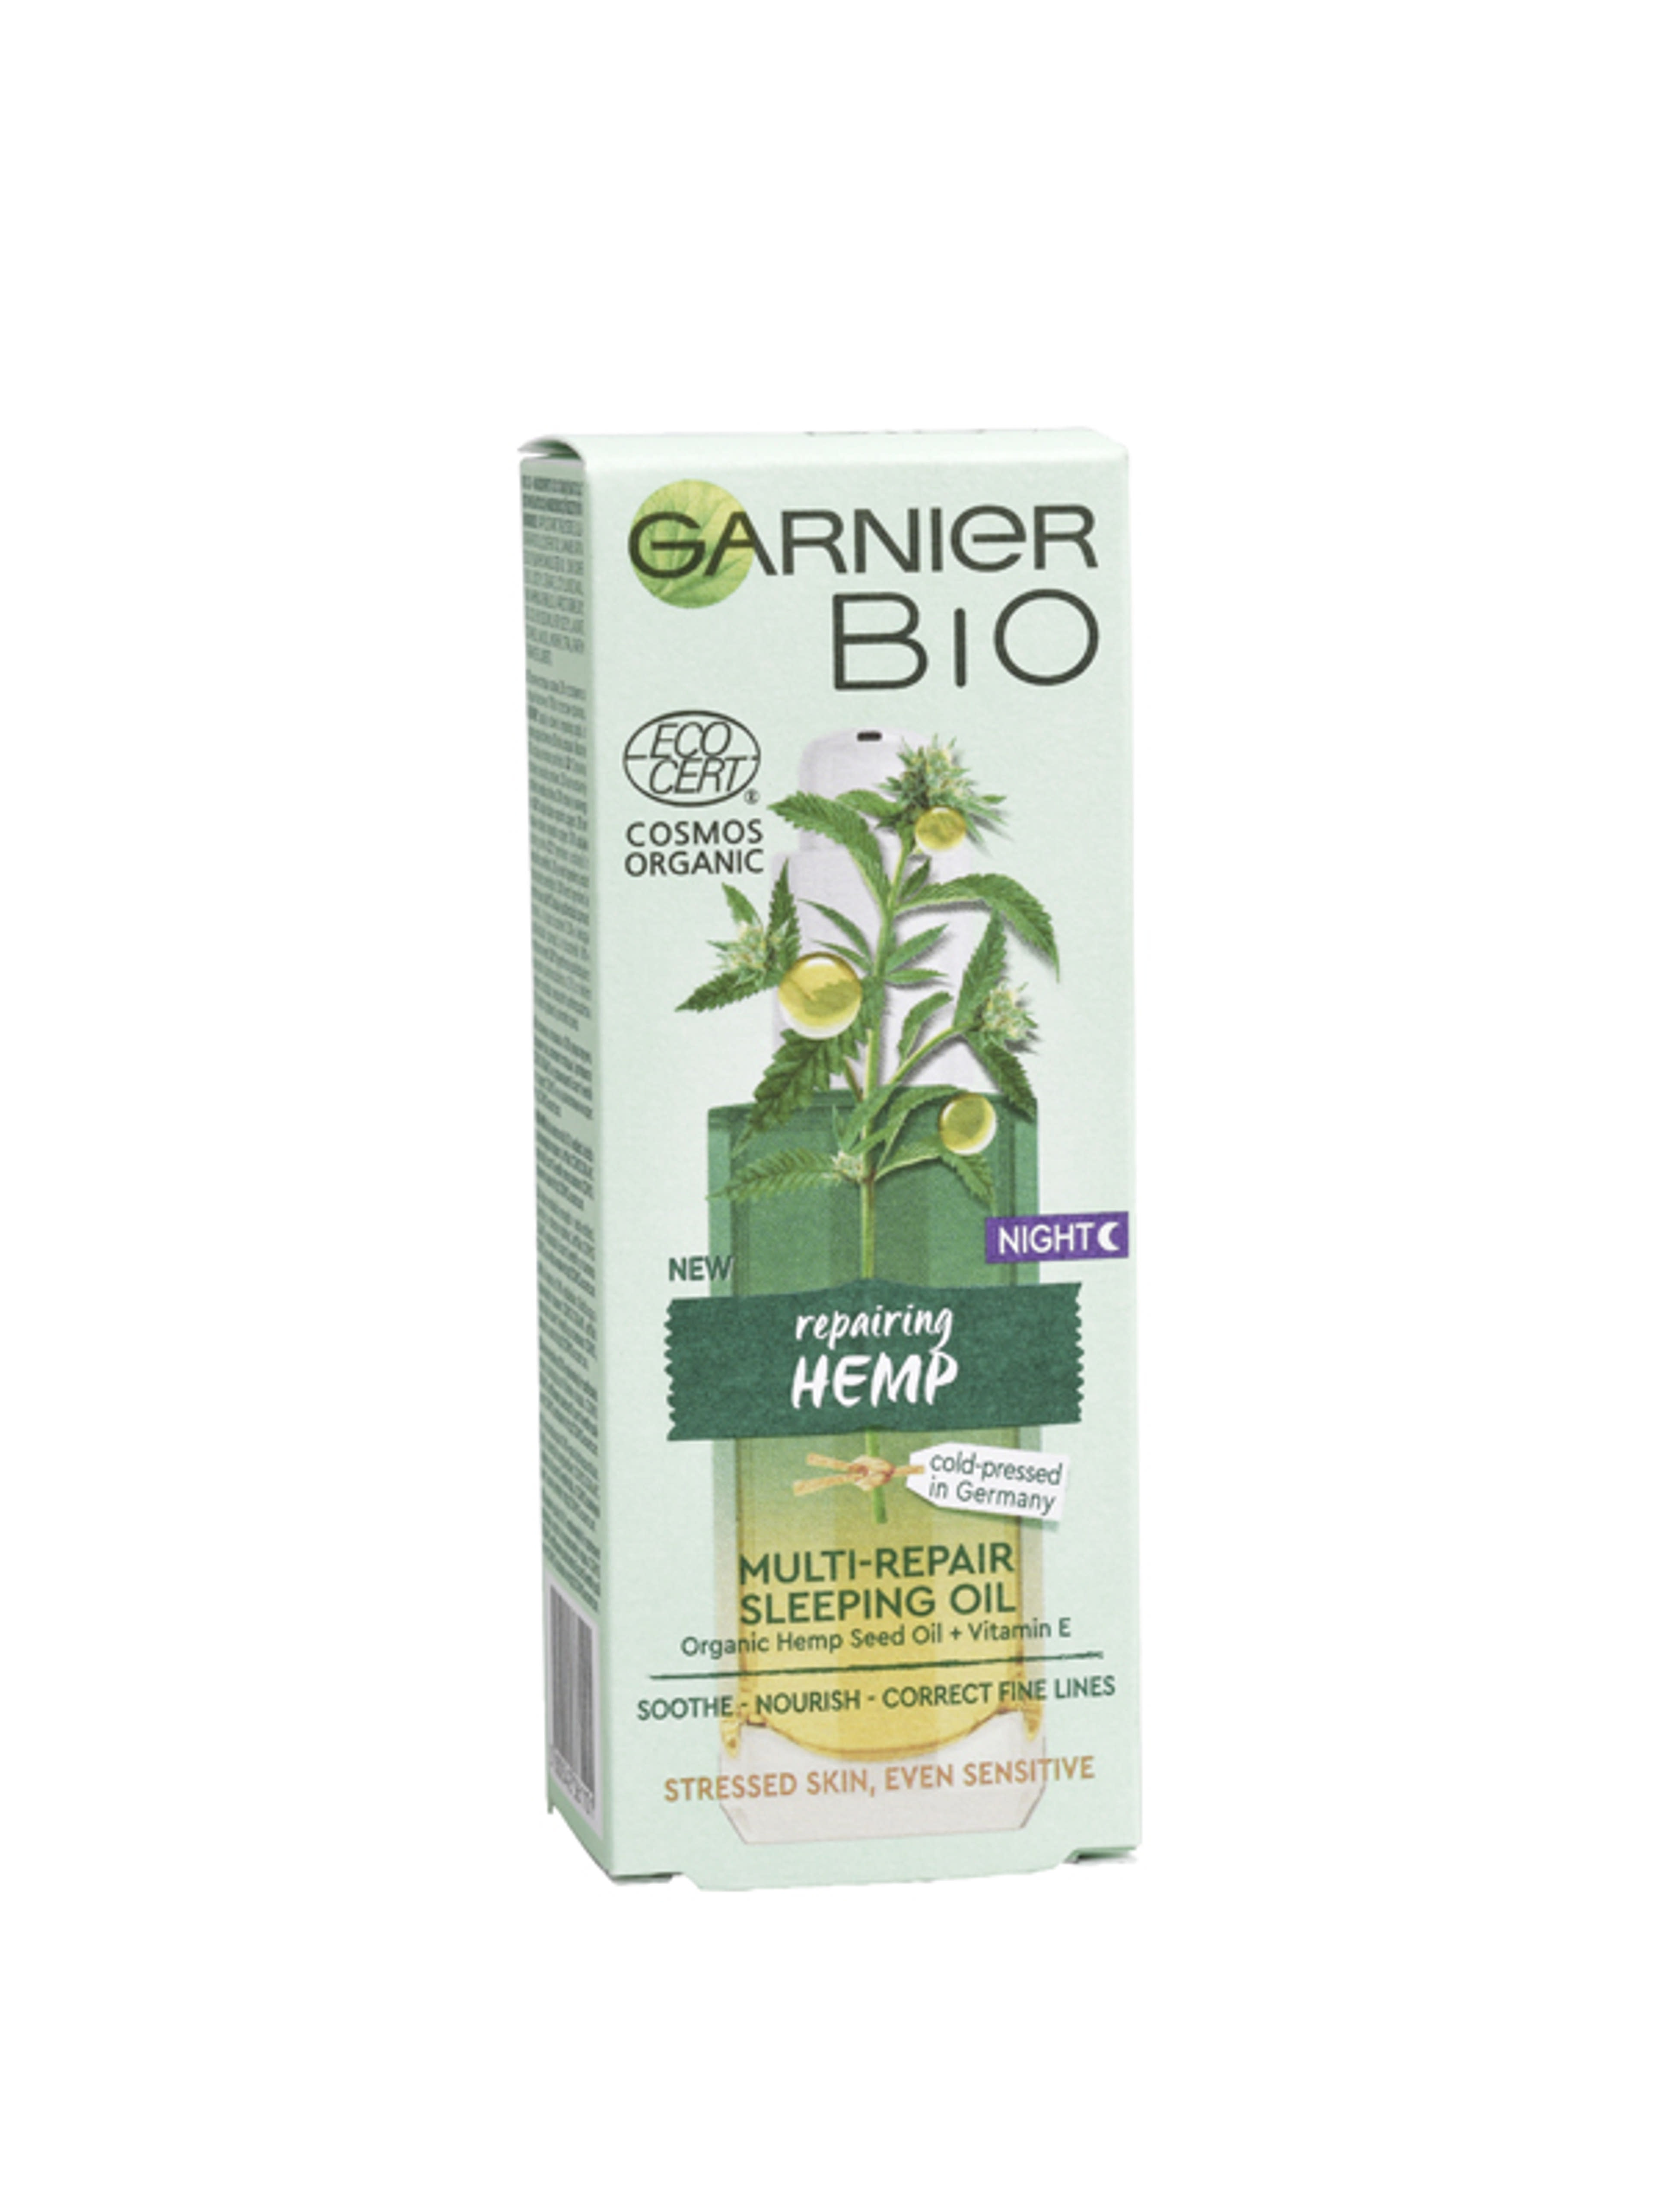 Garnier Bio Hemp többszörösen regeneráló éjszakai olaj - 30 ml-1